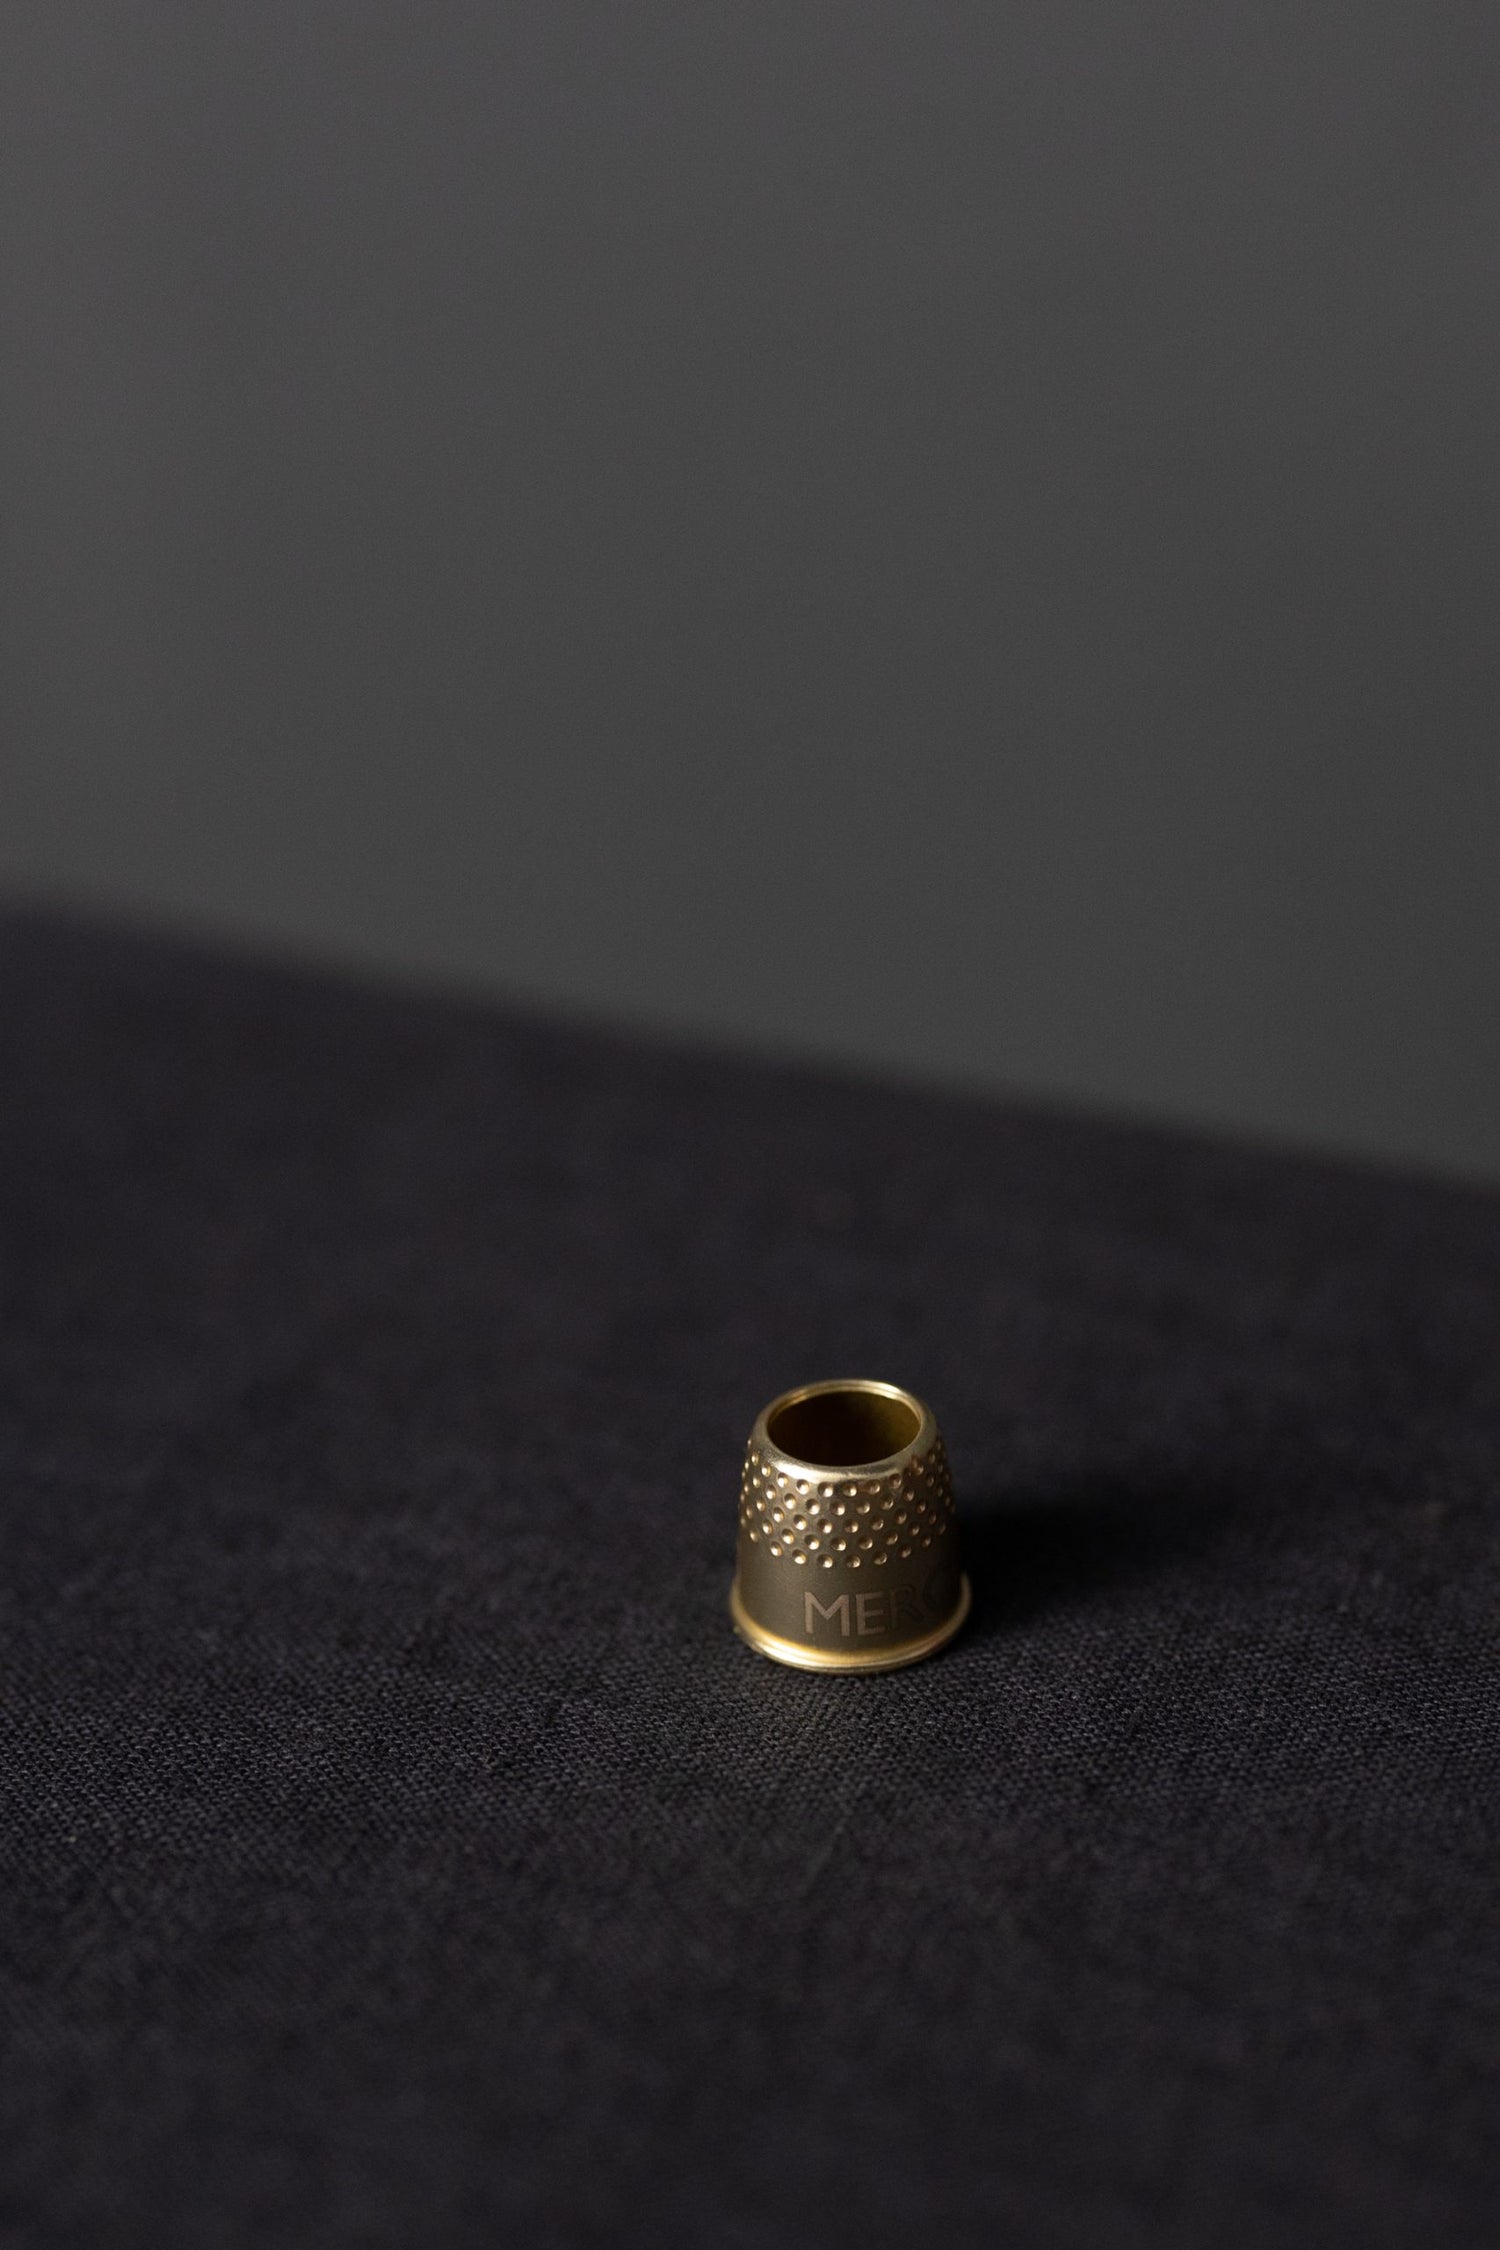 En liten fingerborg i mässing som står på en svart linneduk.